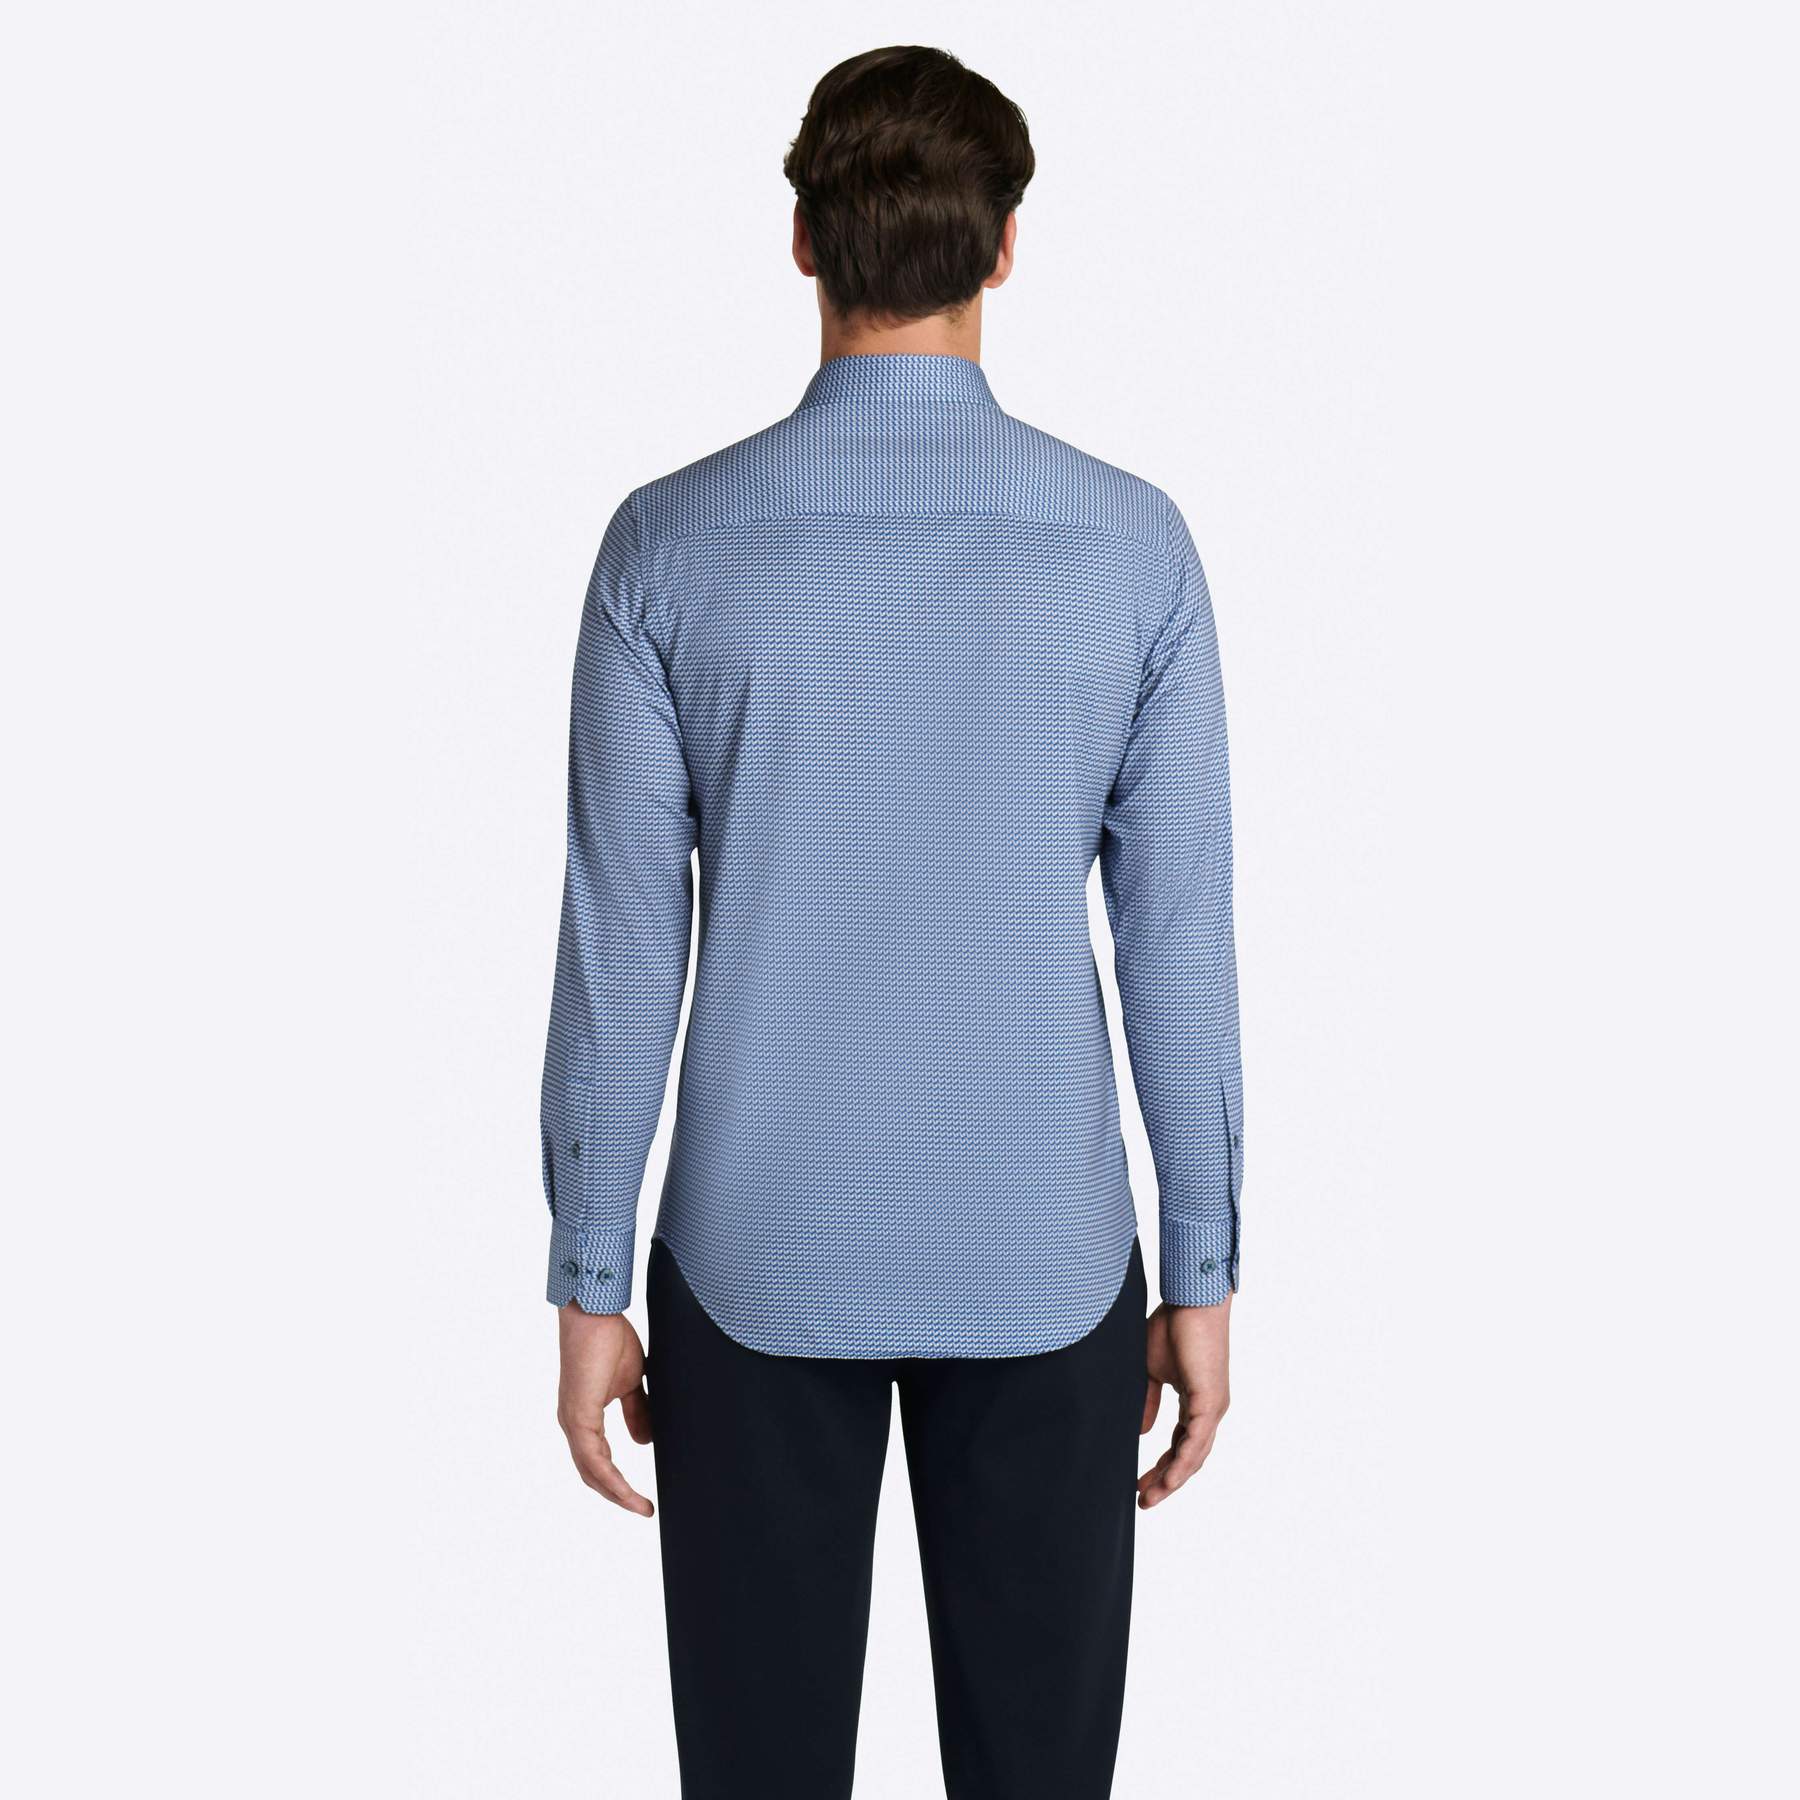 OoohCotton Tech Long Sleeve Shirt - Cobalt Abstract